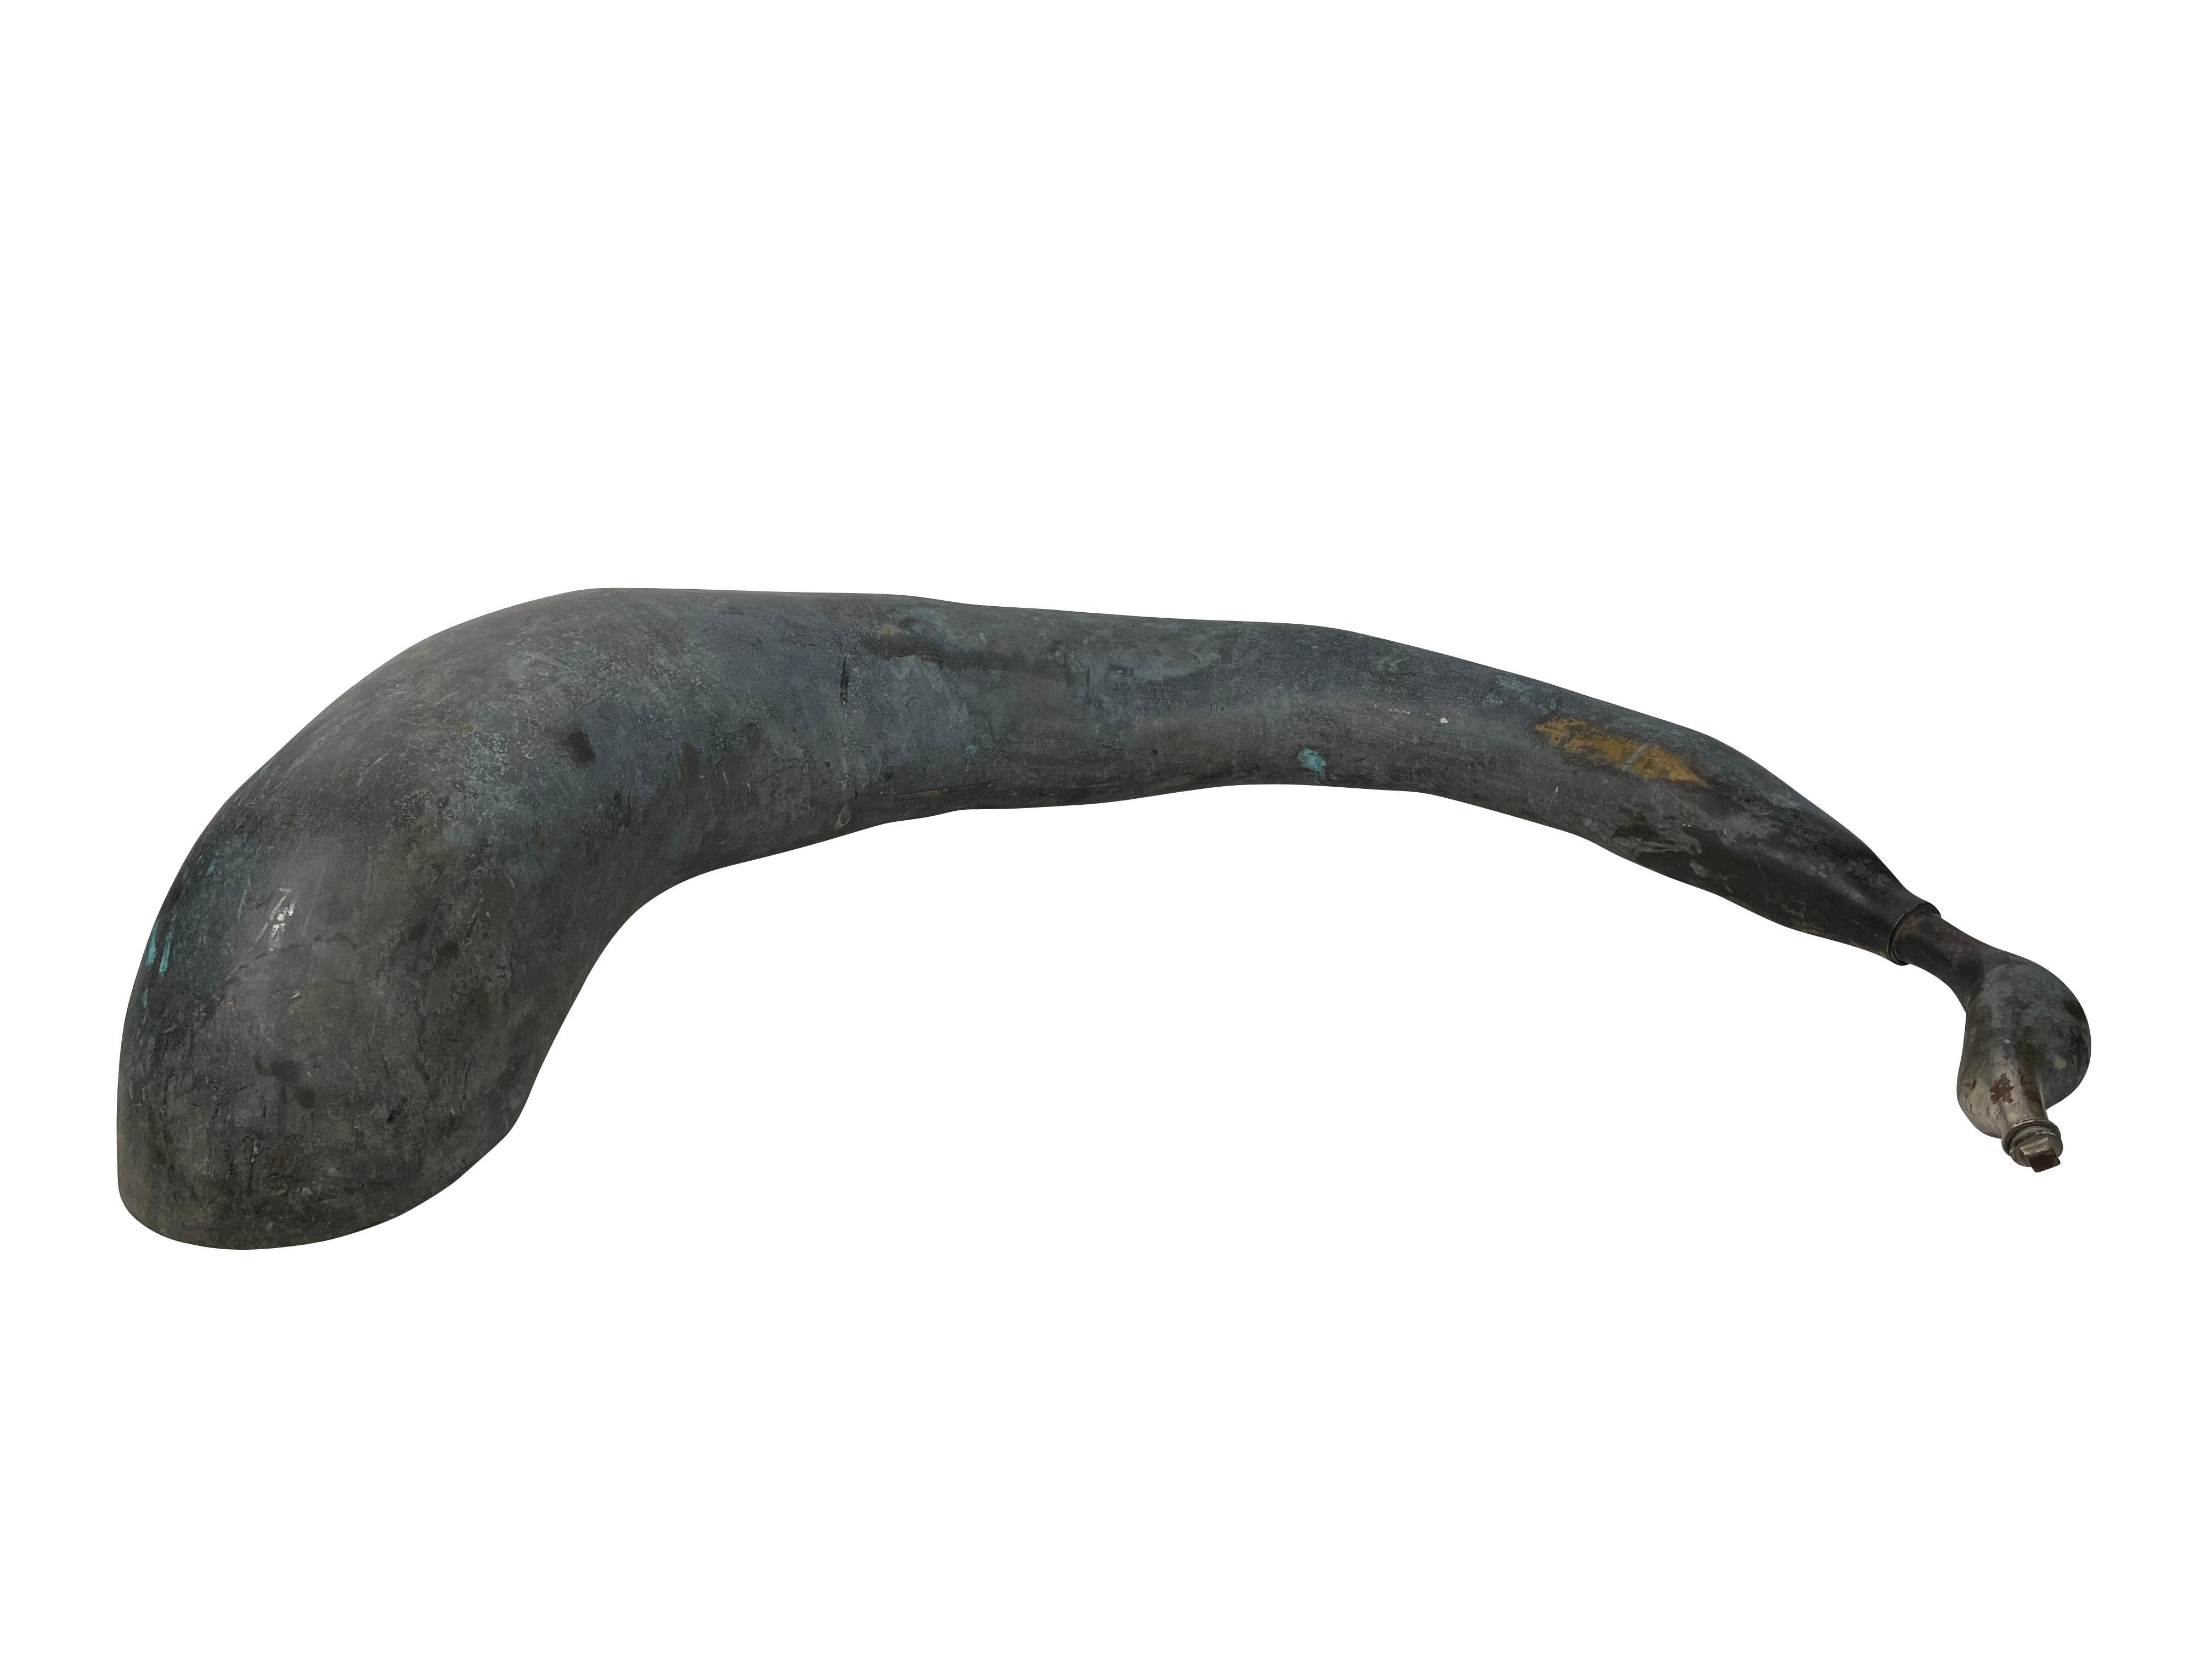 Intéressante baleine en bronze de jardin à forme libre comme sculpture/fontaine. Les mesures de la forme abstraite de la baleine 
44 L x 12 P x 10 H et dispose d'un robinet dans la queue où un tuyau peut être attaché pour pomper l'eau jusqu'à un